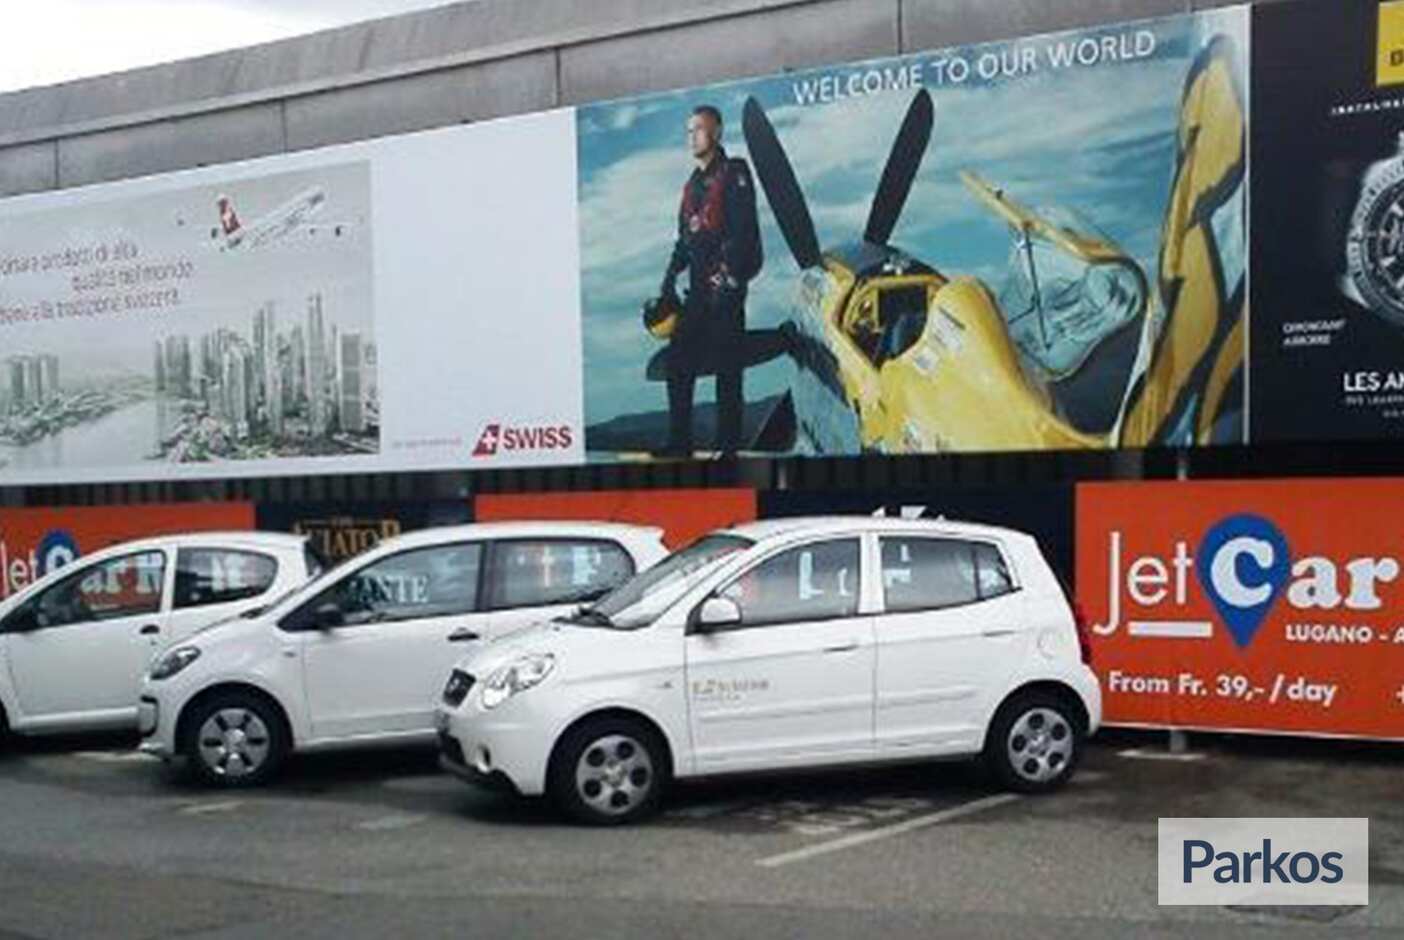 JetCarPark - Parcheggio Aeroporto Lugano - picture 1